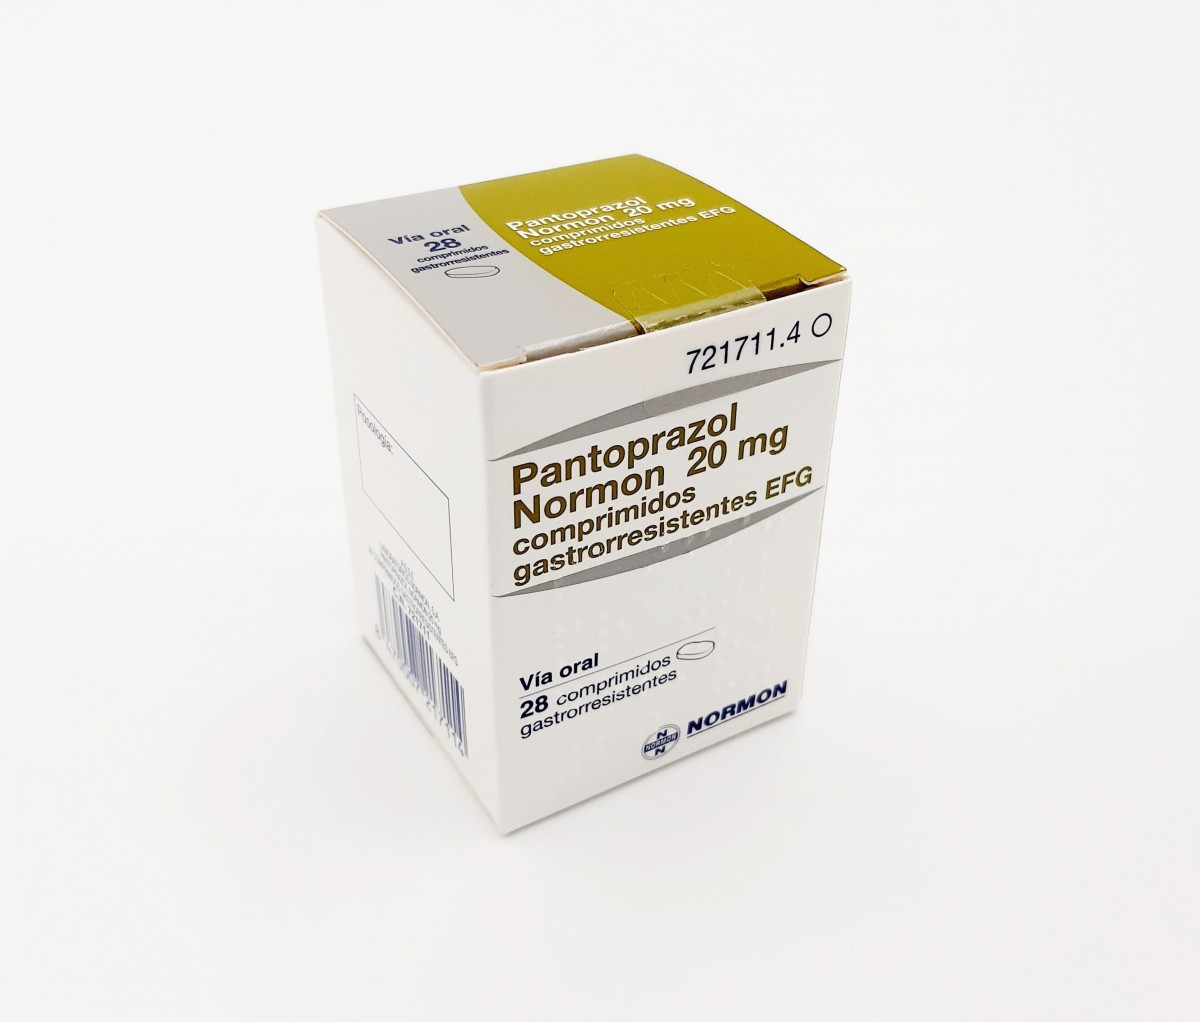 PANTOPRAZOL NORMON 20 mg COMPRIMIDOS GASTRORRESISTENTES EFG,56 comprimidos fotografía del envase.